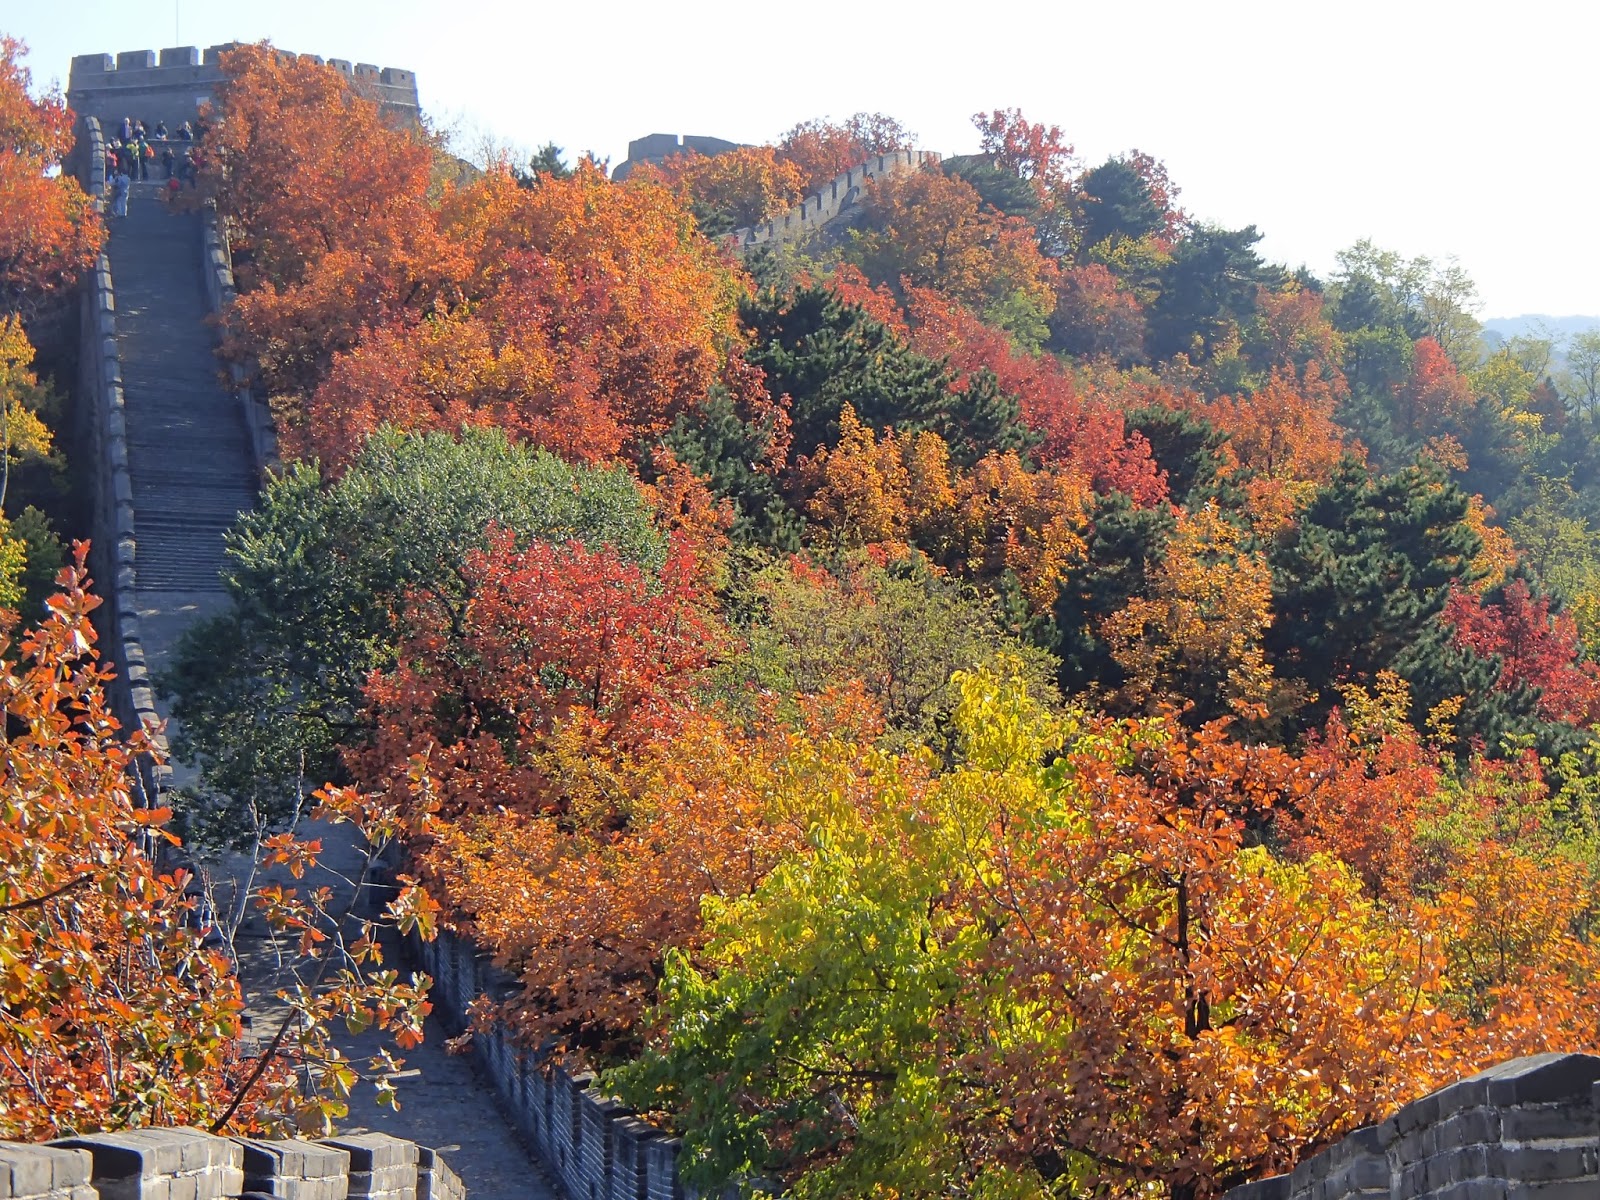 badaling-great-wall-autumn-vemaybay123